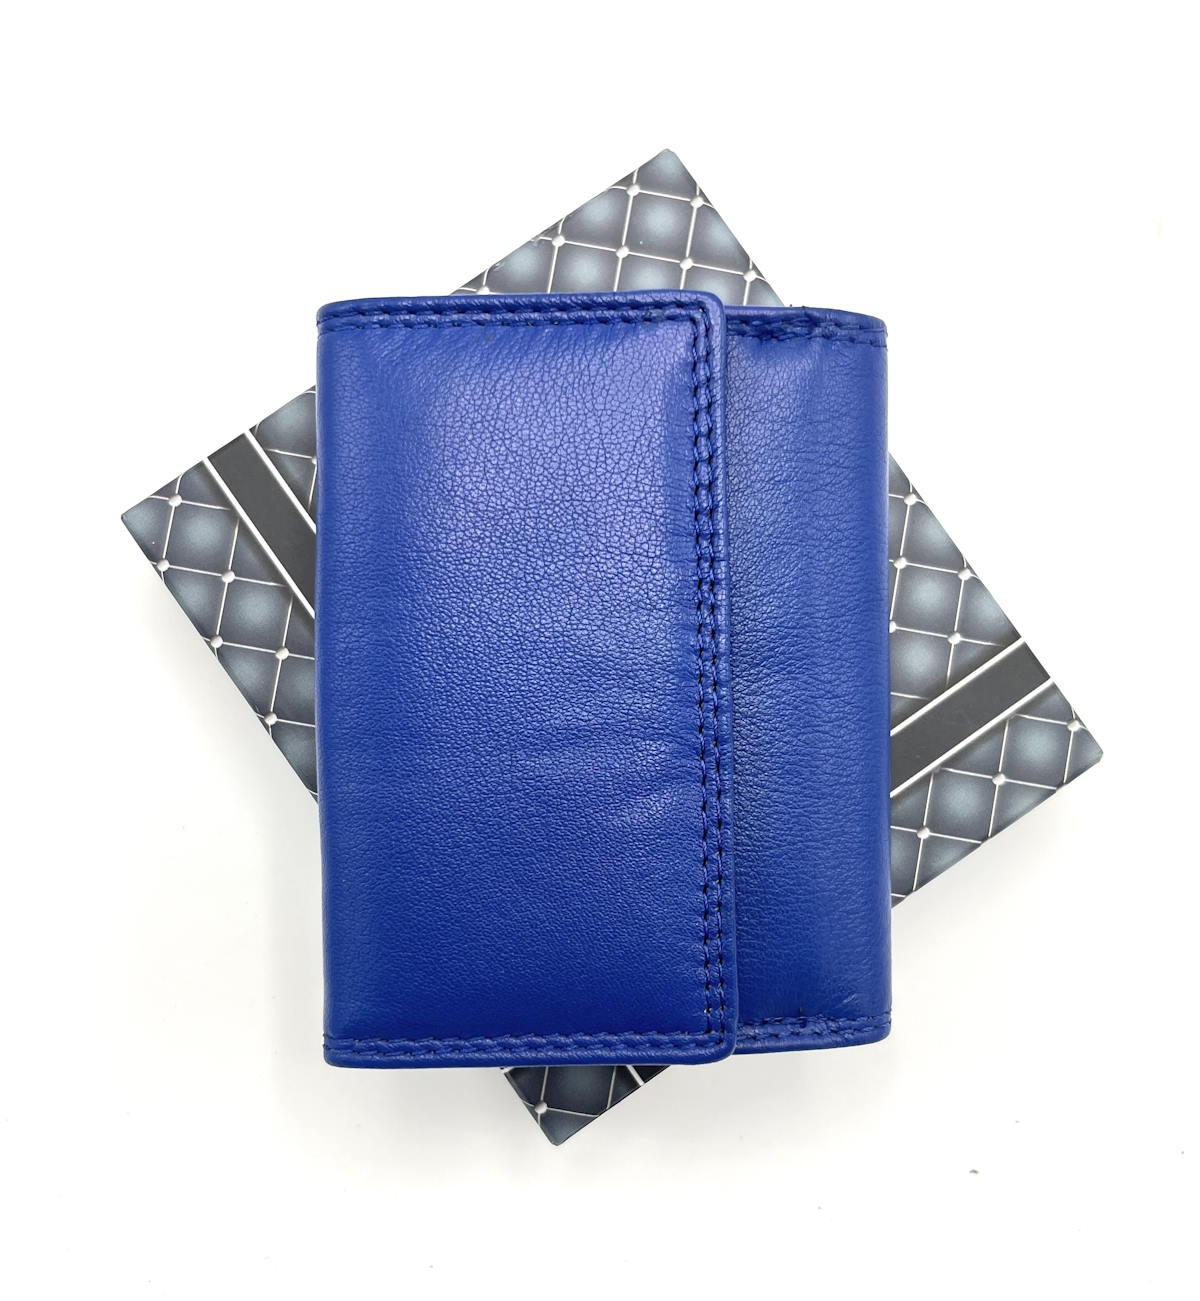 Genuine leather wallet, Brand GMV, art. GMV80-305